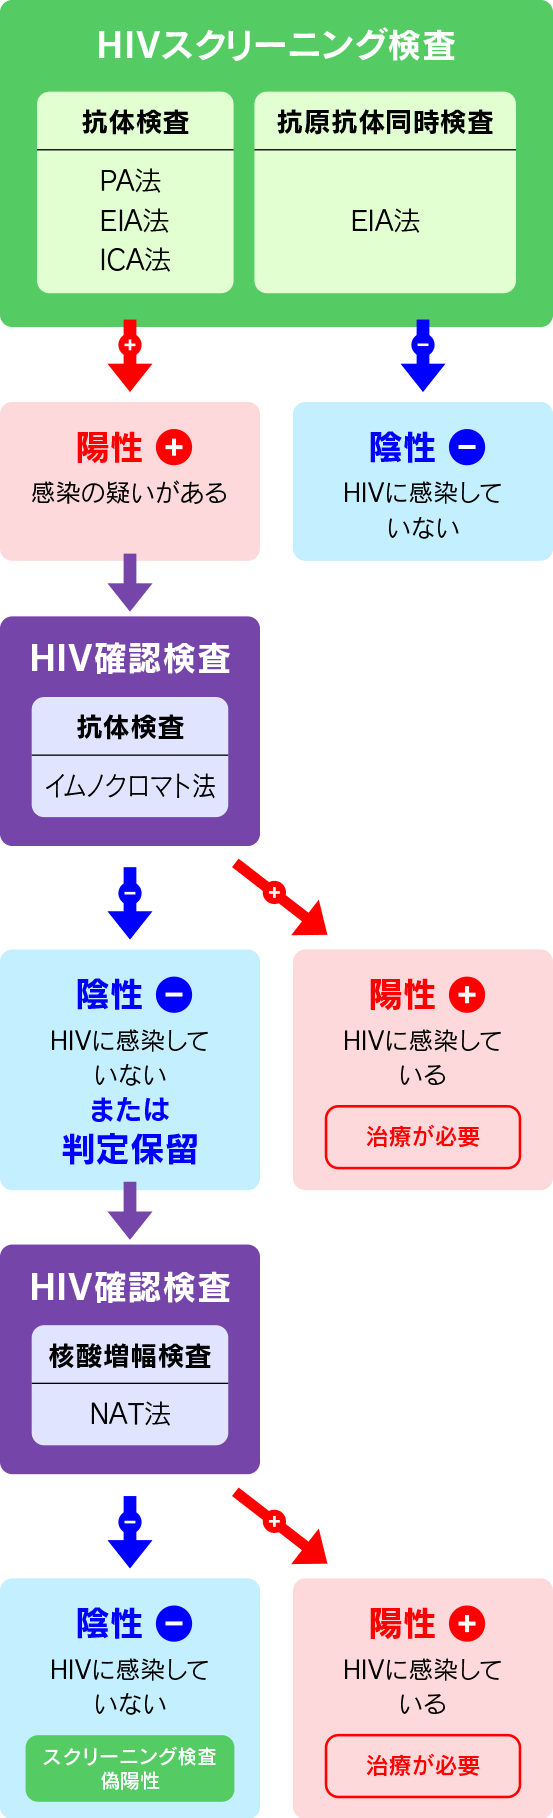 HIVスクリーニング検査の過程